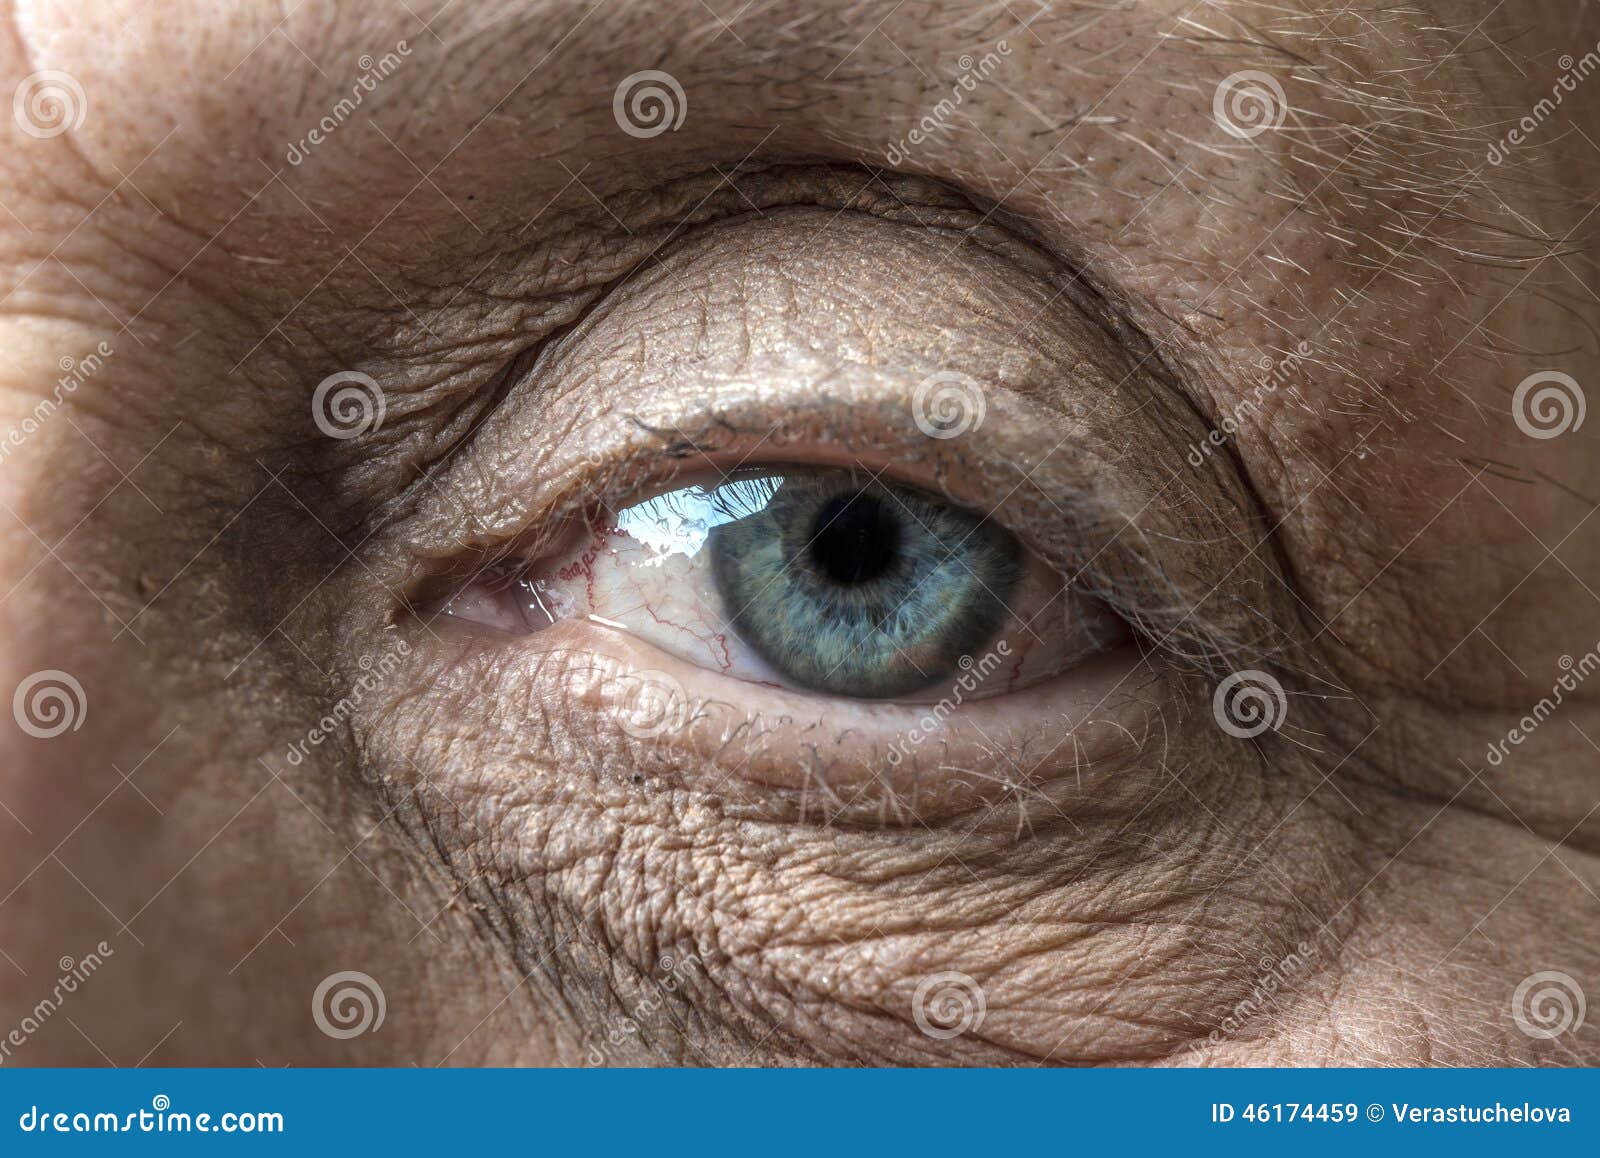 Старые глазки. Глаза пожилого человека.